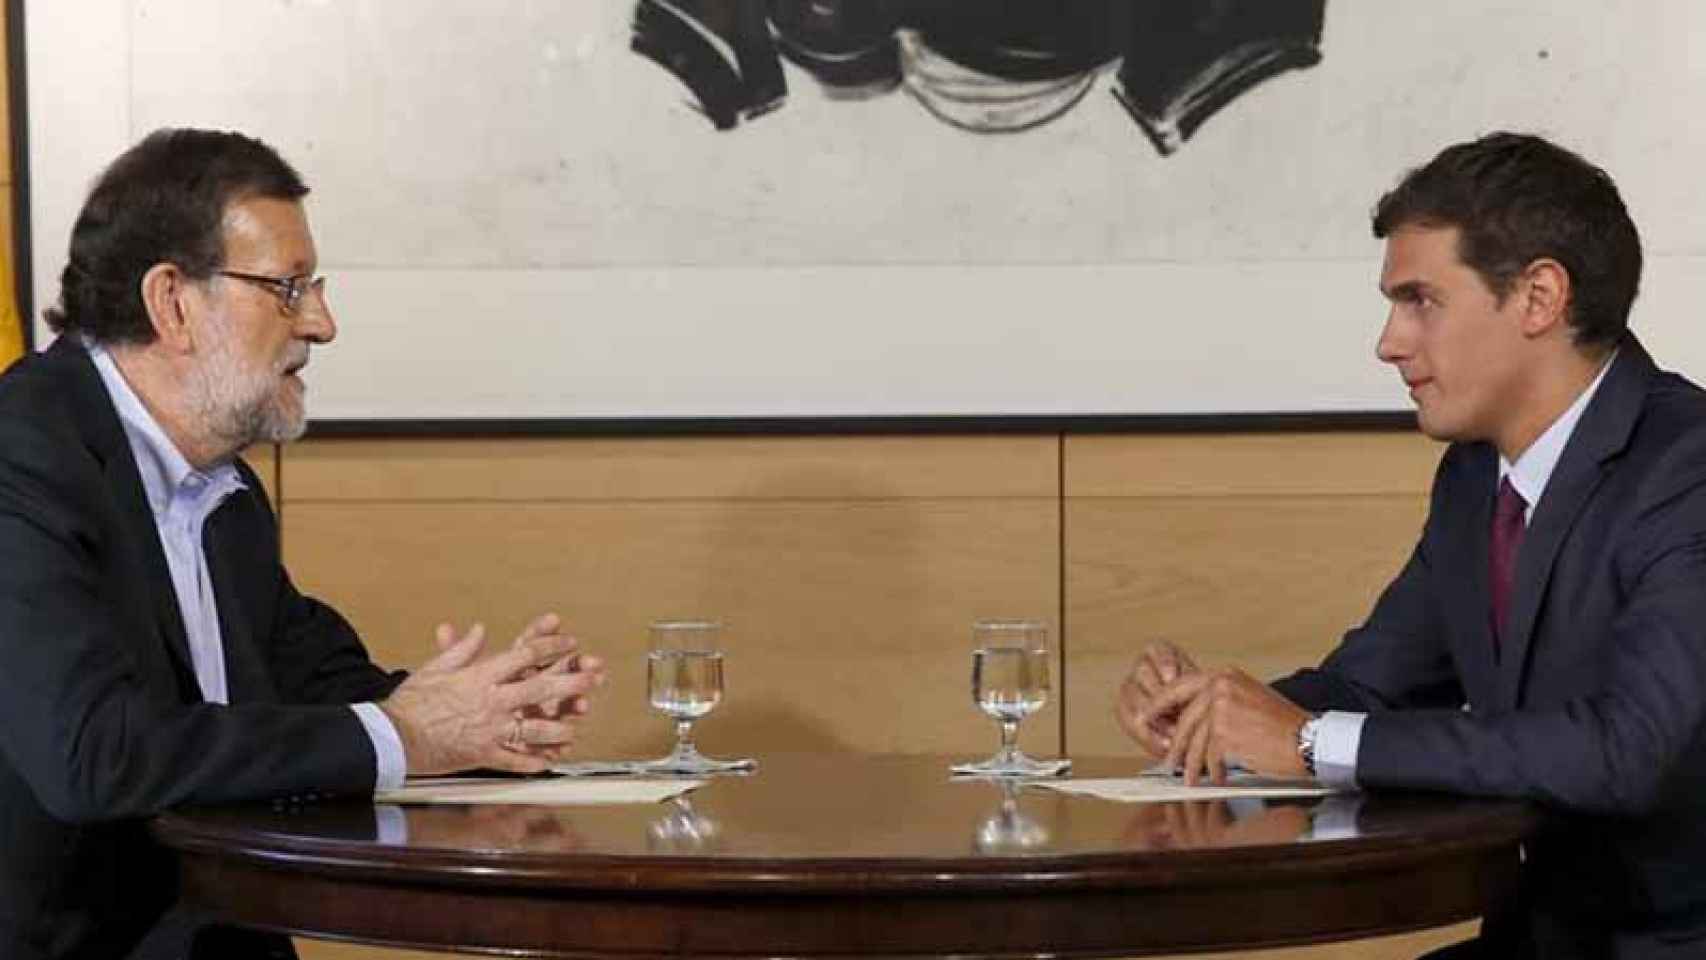 El presidente del Gobierno en funciones, Mariano Rajoy, y el líder de Ciudadanos, Albert Rivera, conversan durante su última reunión en el Congreso. / EFE